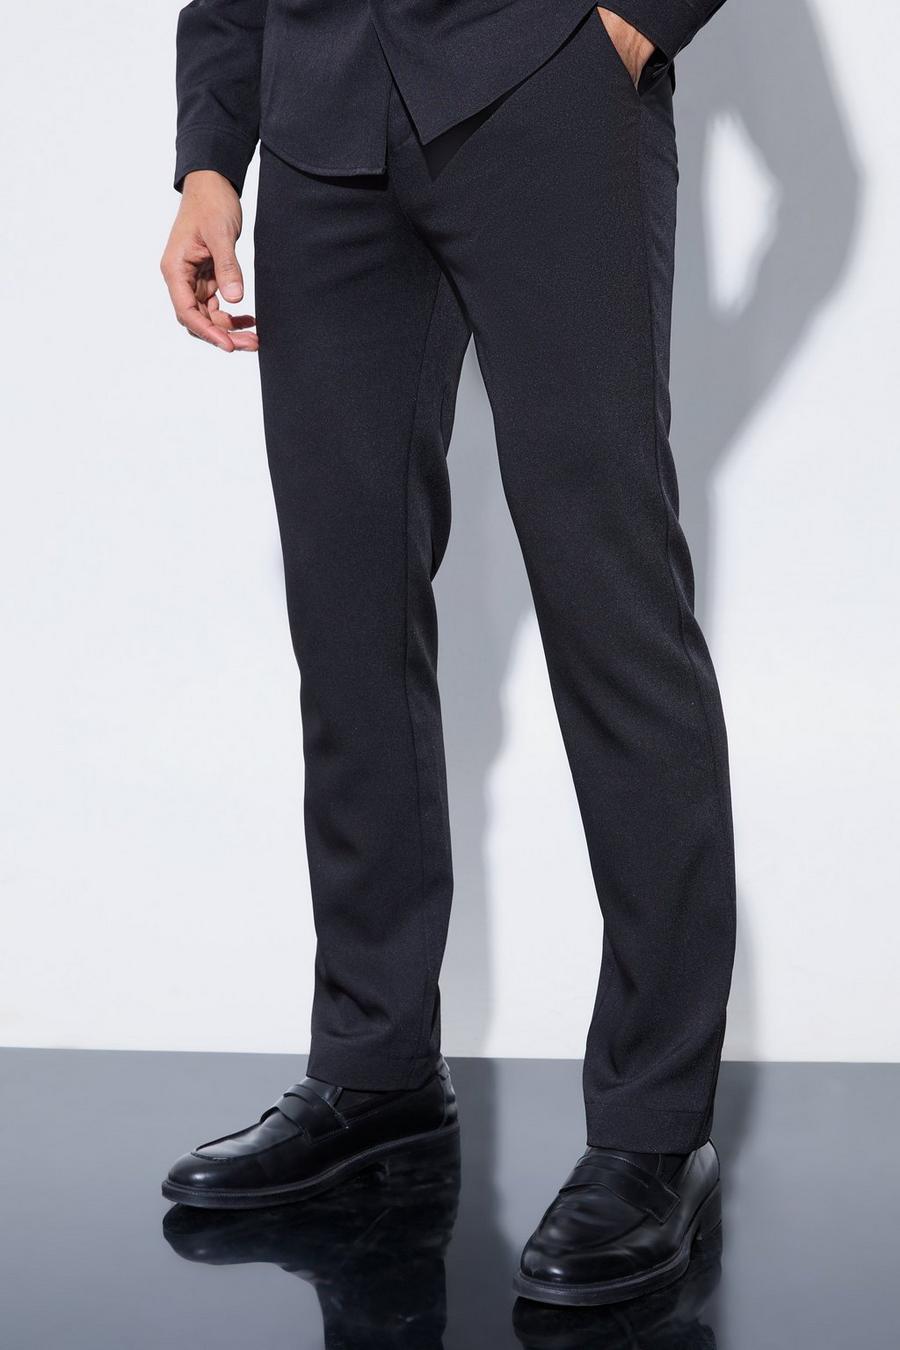 Men's Suit Trousers | Men's Black Suit Trousers | boohoo UK